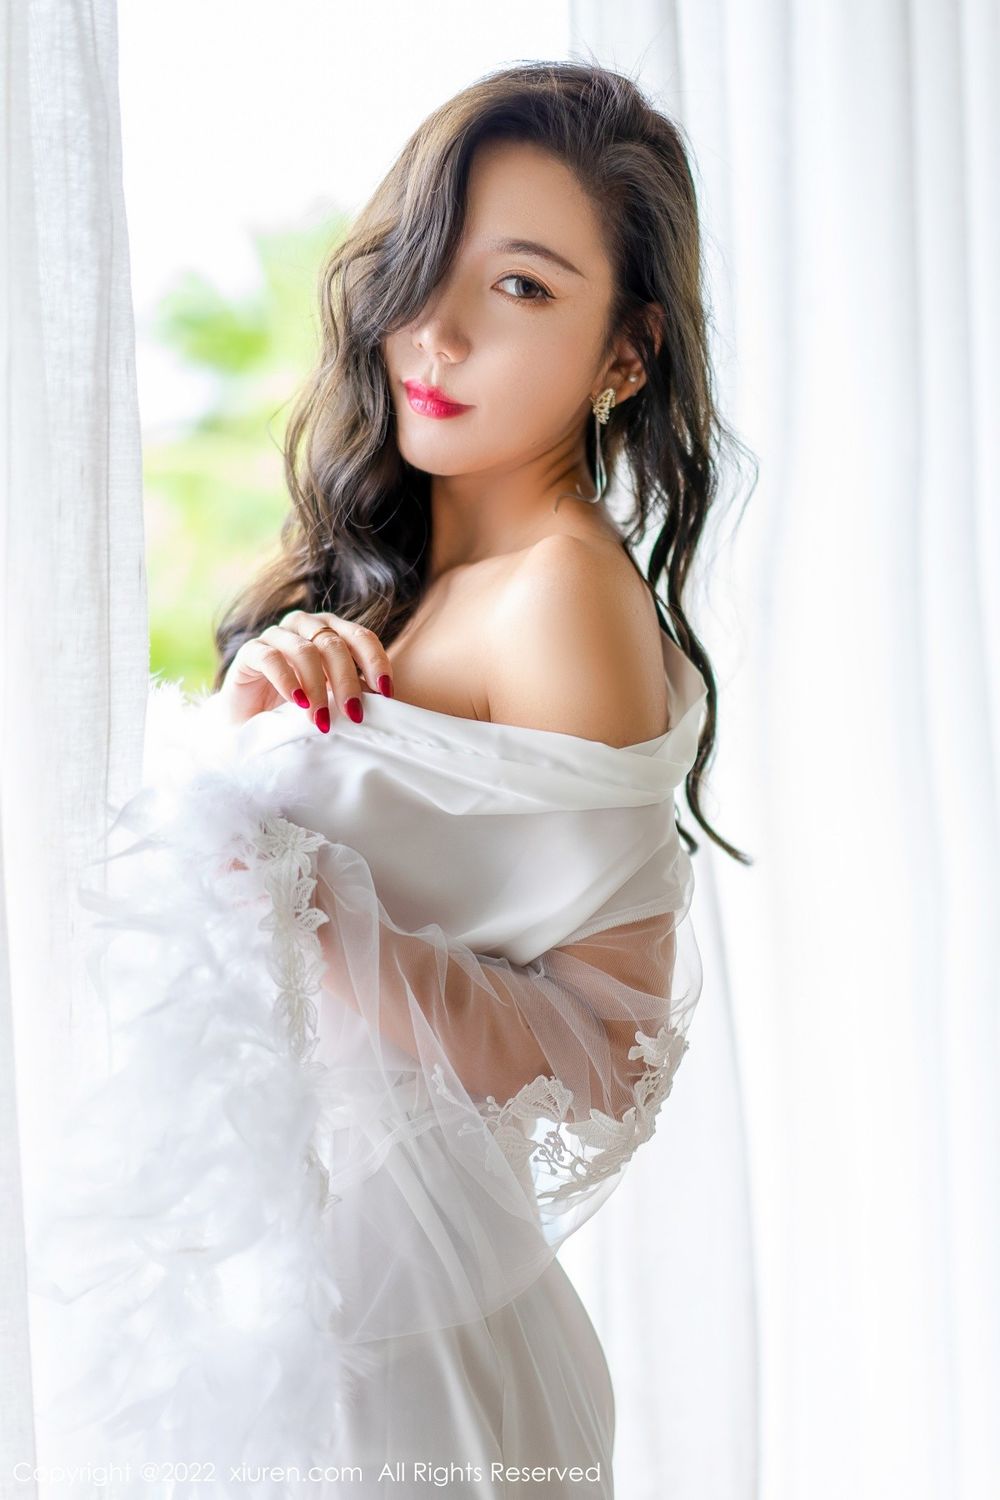 美女模特艾静香白色礼服搭配白色高跟系列三亚旅拍